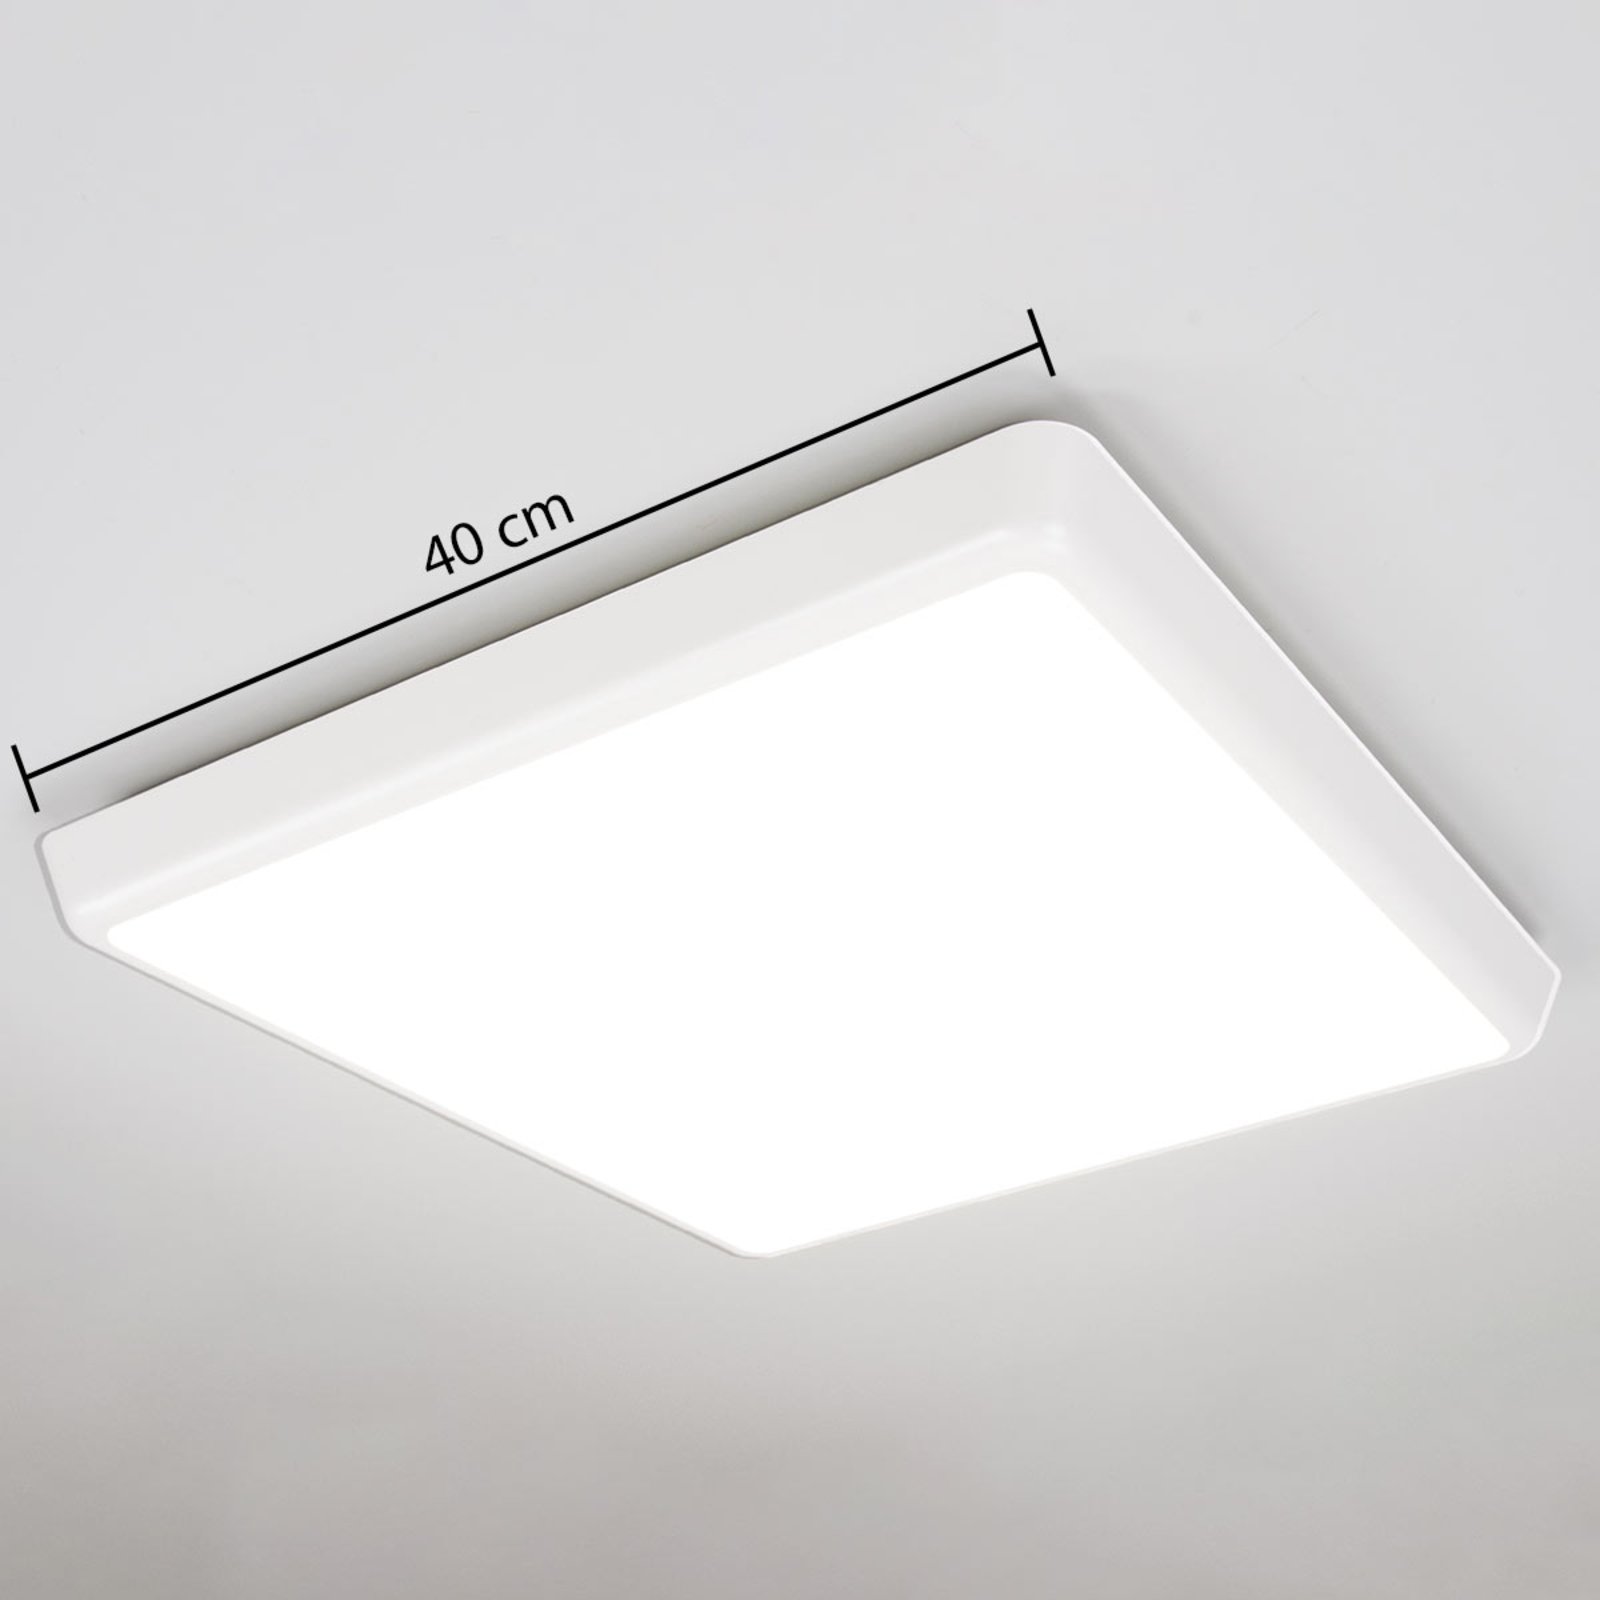 Lampa sufitowa LED Augustin, kątowa, 40 x 40 cm